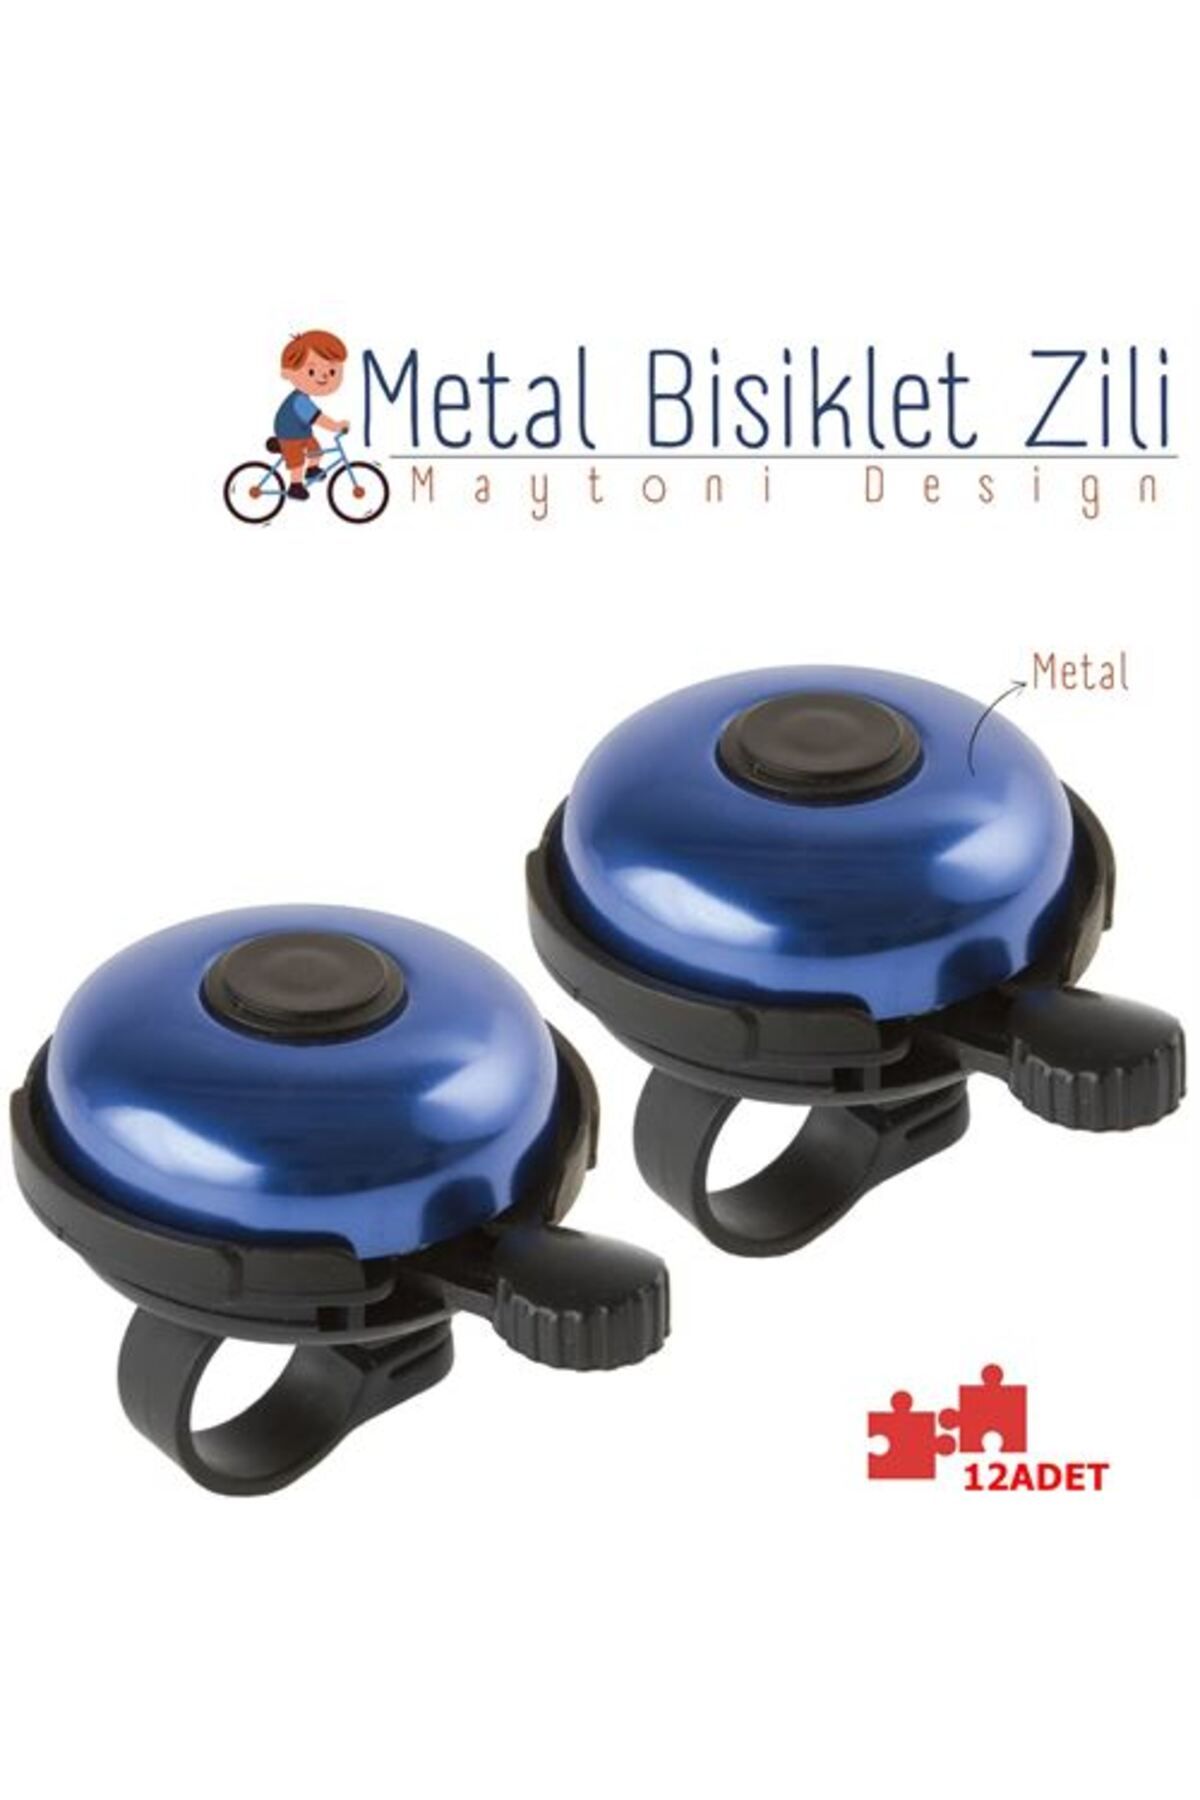 ModaCar Bisiklet Zili 24+4 ADET Metal Maytoni Design